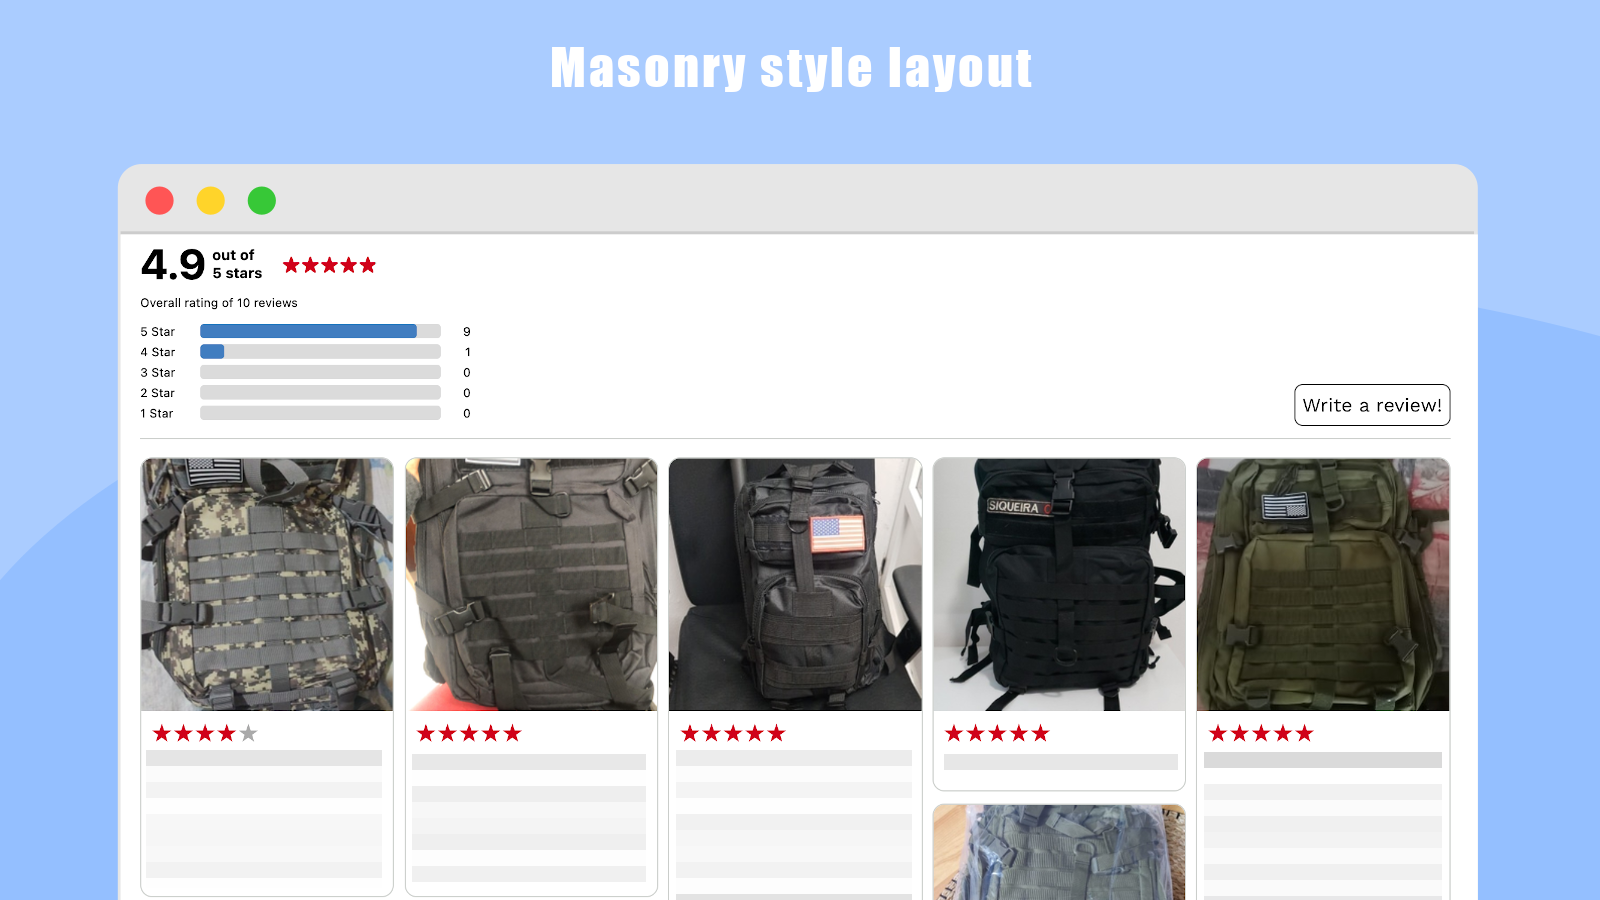 Masonry style layout